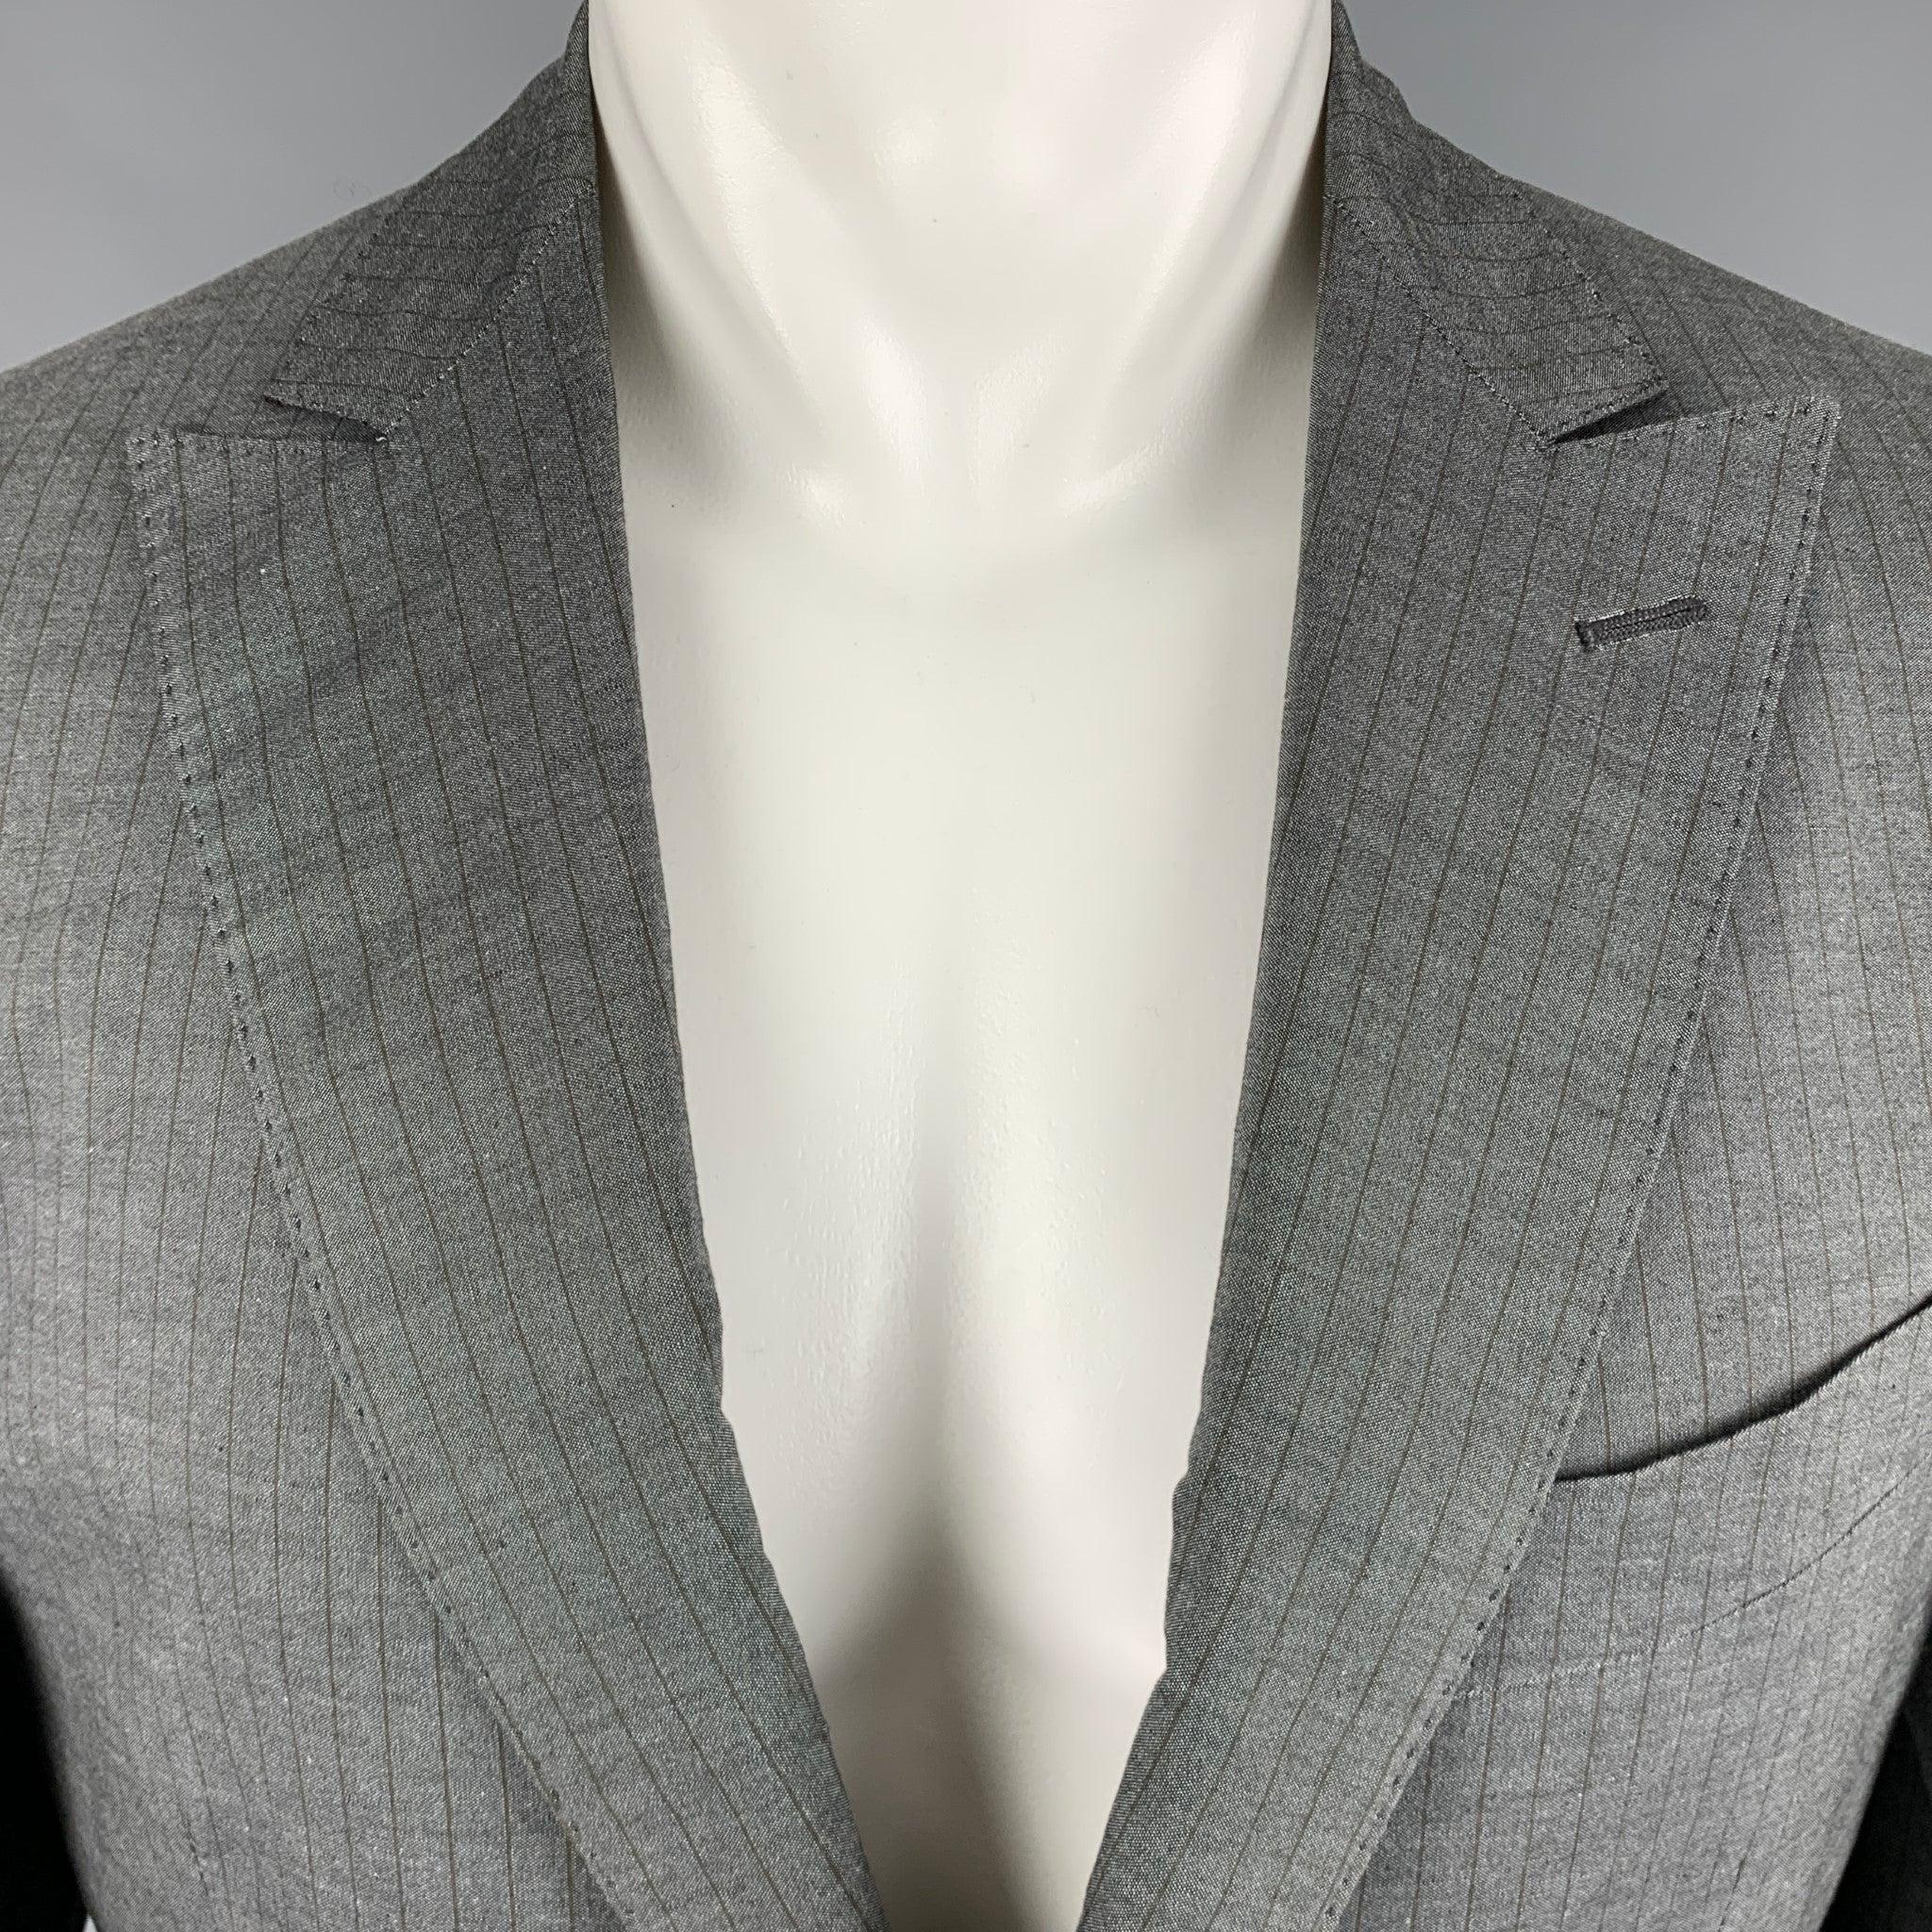 Manteau de sport ETRO
en coton gris, avec des rayures brunes, un boutonnage simple, un revers en pointe et une fermeture à double bouton. Fabriqué en Italie. Excellent état. 

Marqué :   50 

Mesures : 
 
Épaule : 18 pouces Poitrine : 40 pouces